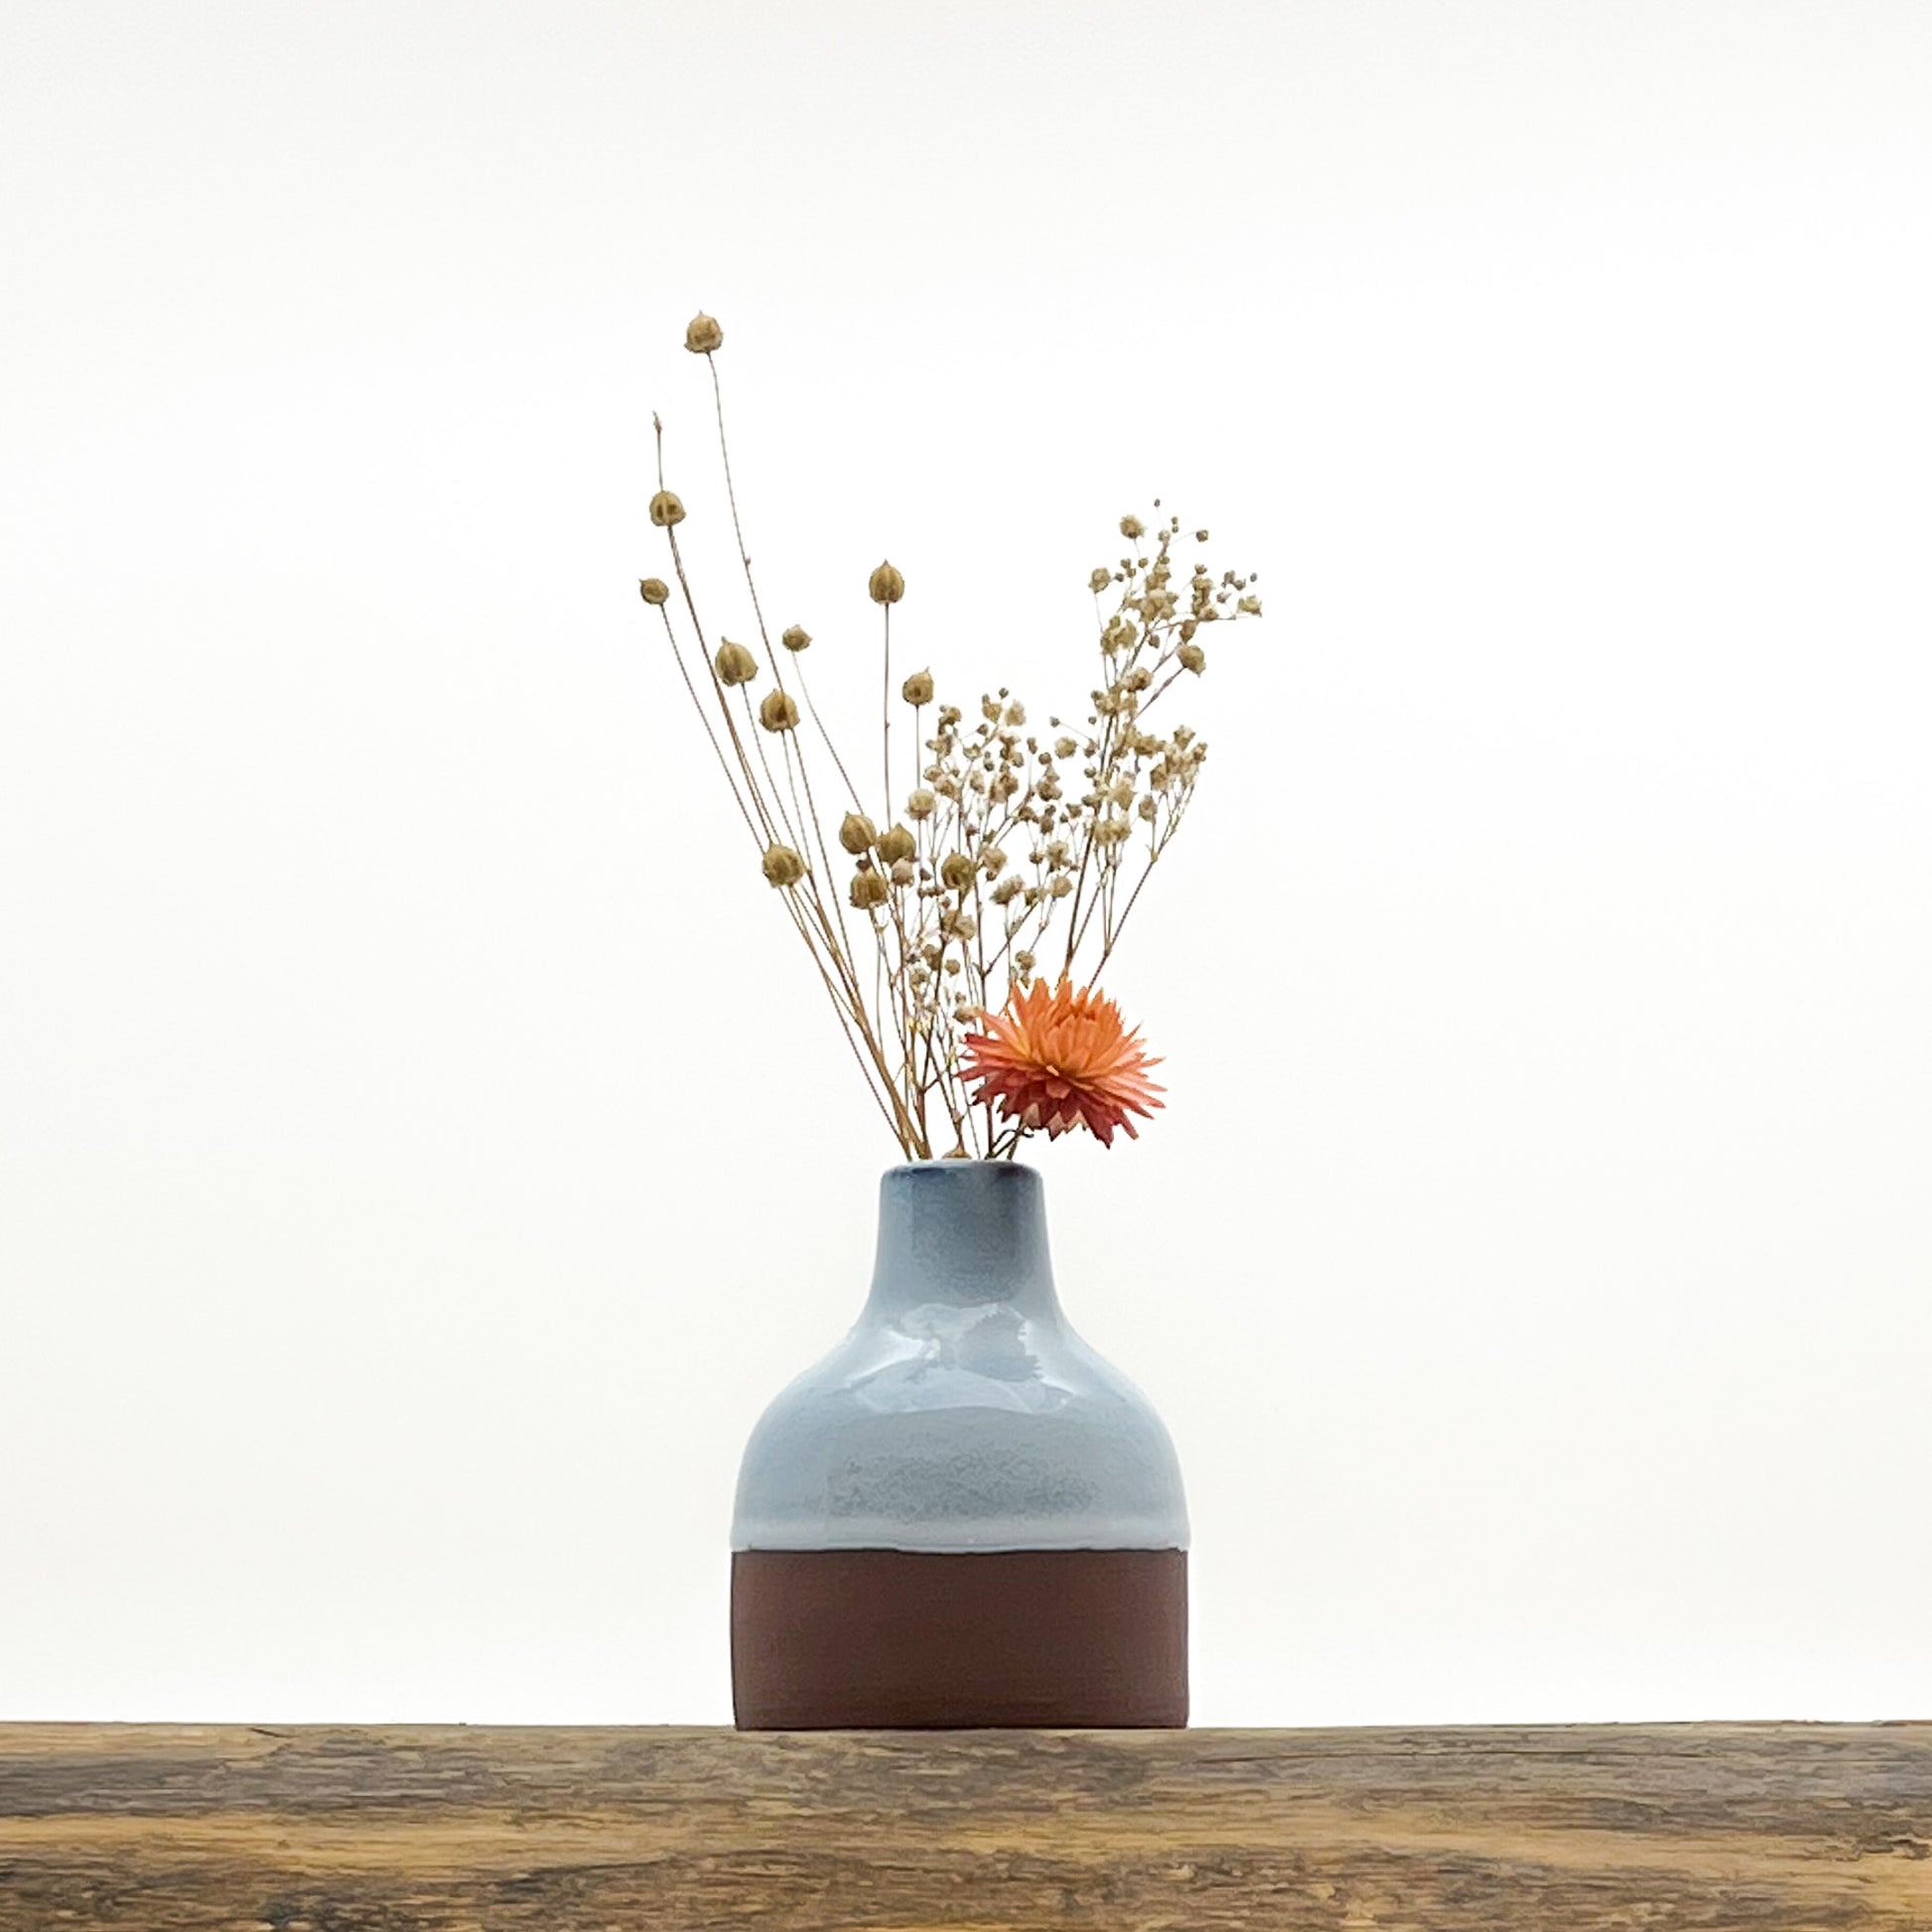 Duo de vases en céramique recouverts à moitié d'un bleu doux azur. Deux formats différents harmonisés. Livrés avec fleurs séchées offertes.